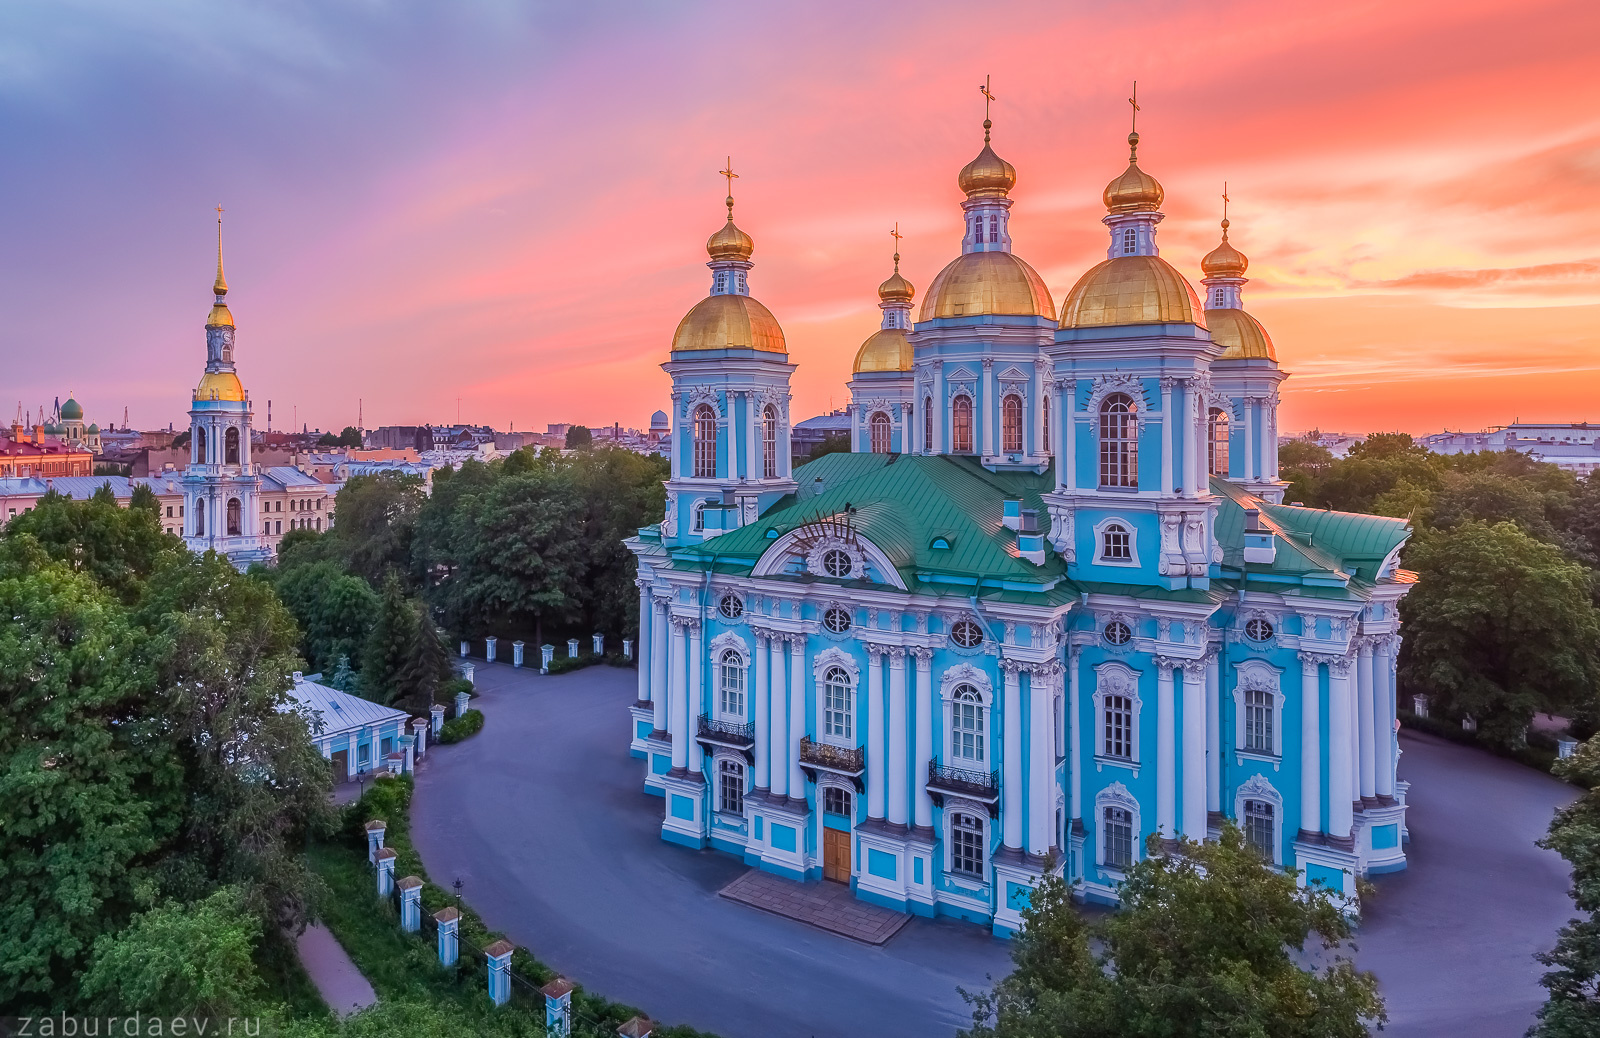 Никольский собор россия петербург вечер лето закат